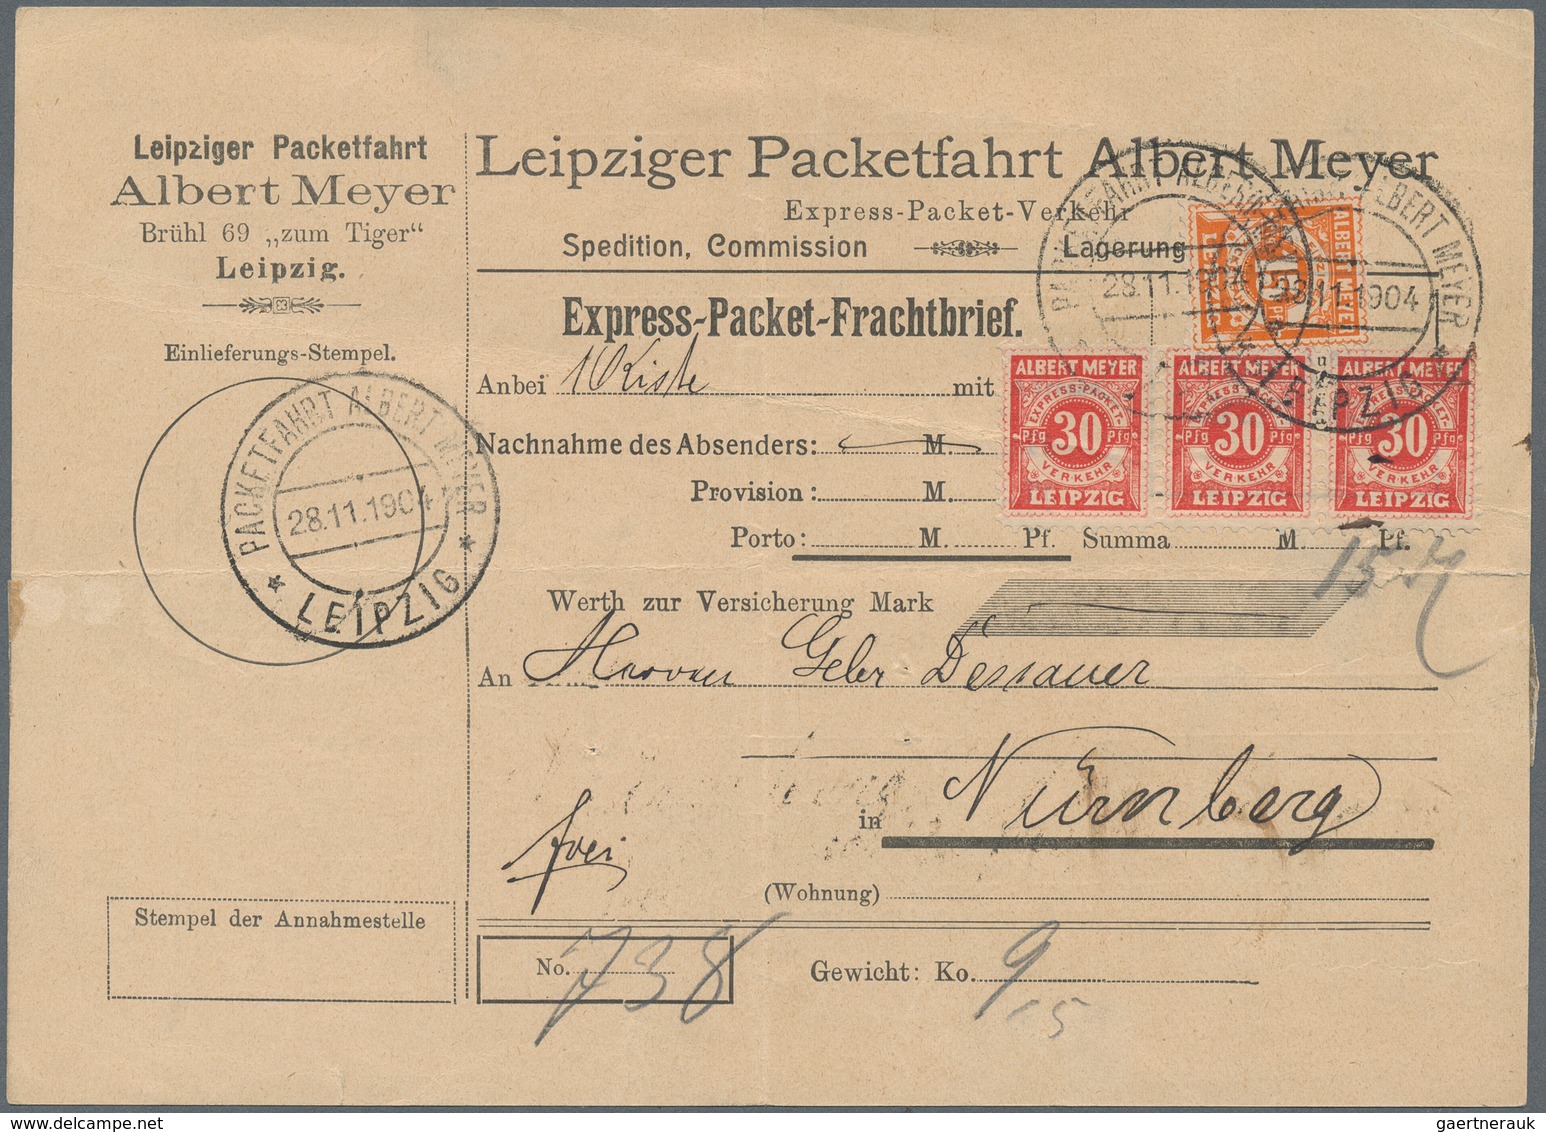 Deutsches Reich - Privatpost (Stadtpost): Leipzig Leipziger Packetfahrt Albert Meyer 1904 15 Pfennig - Private & Local Mails